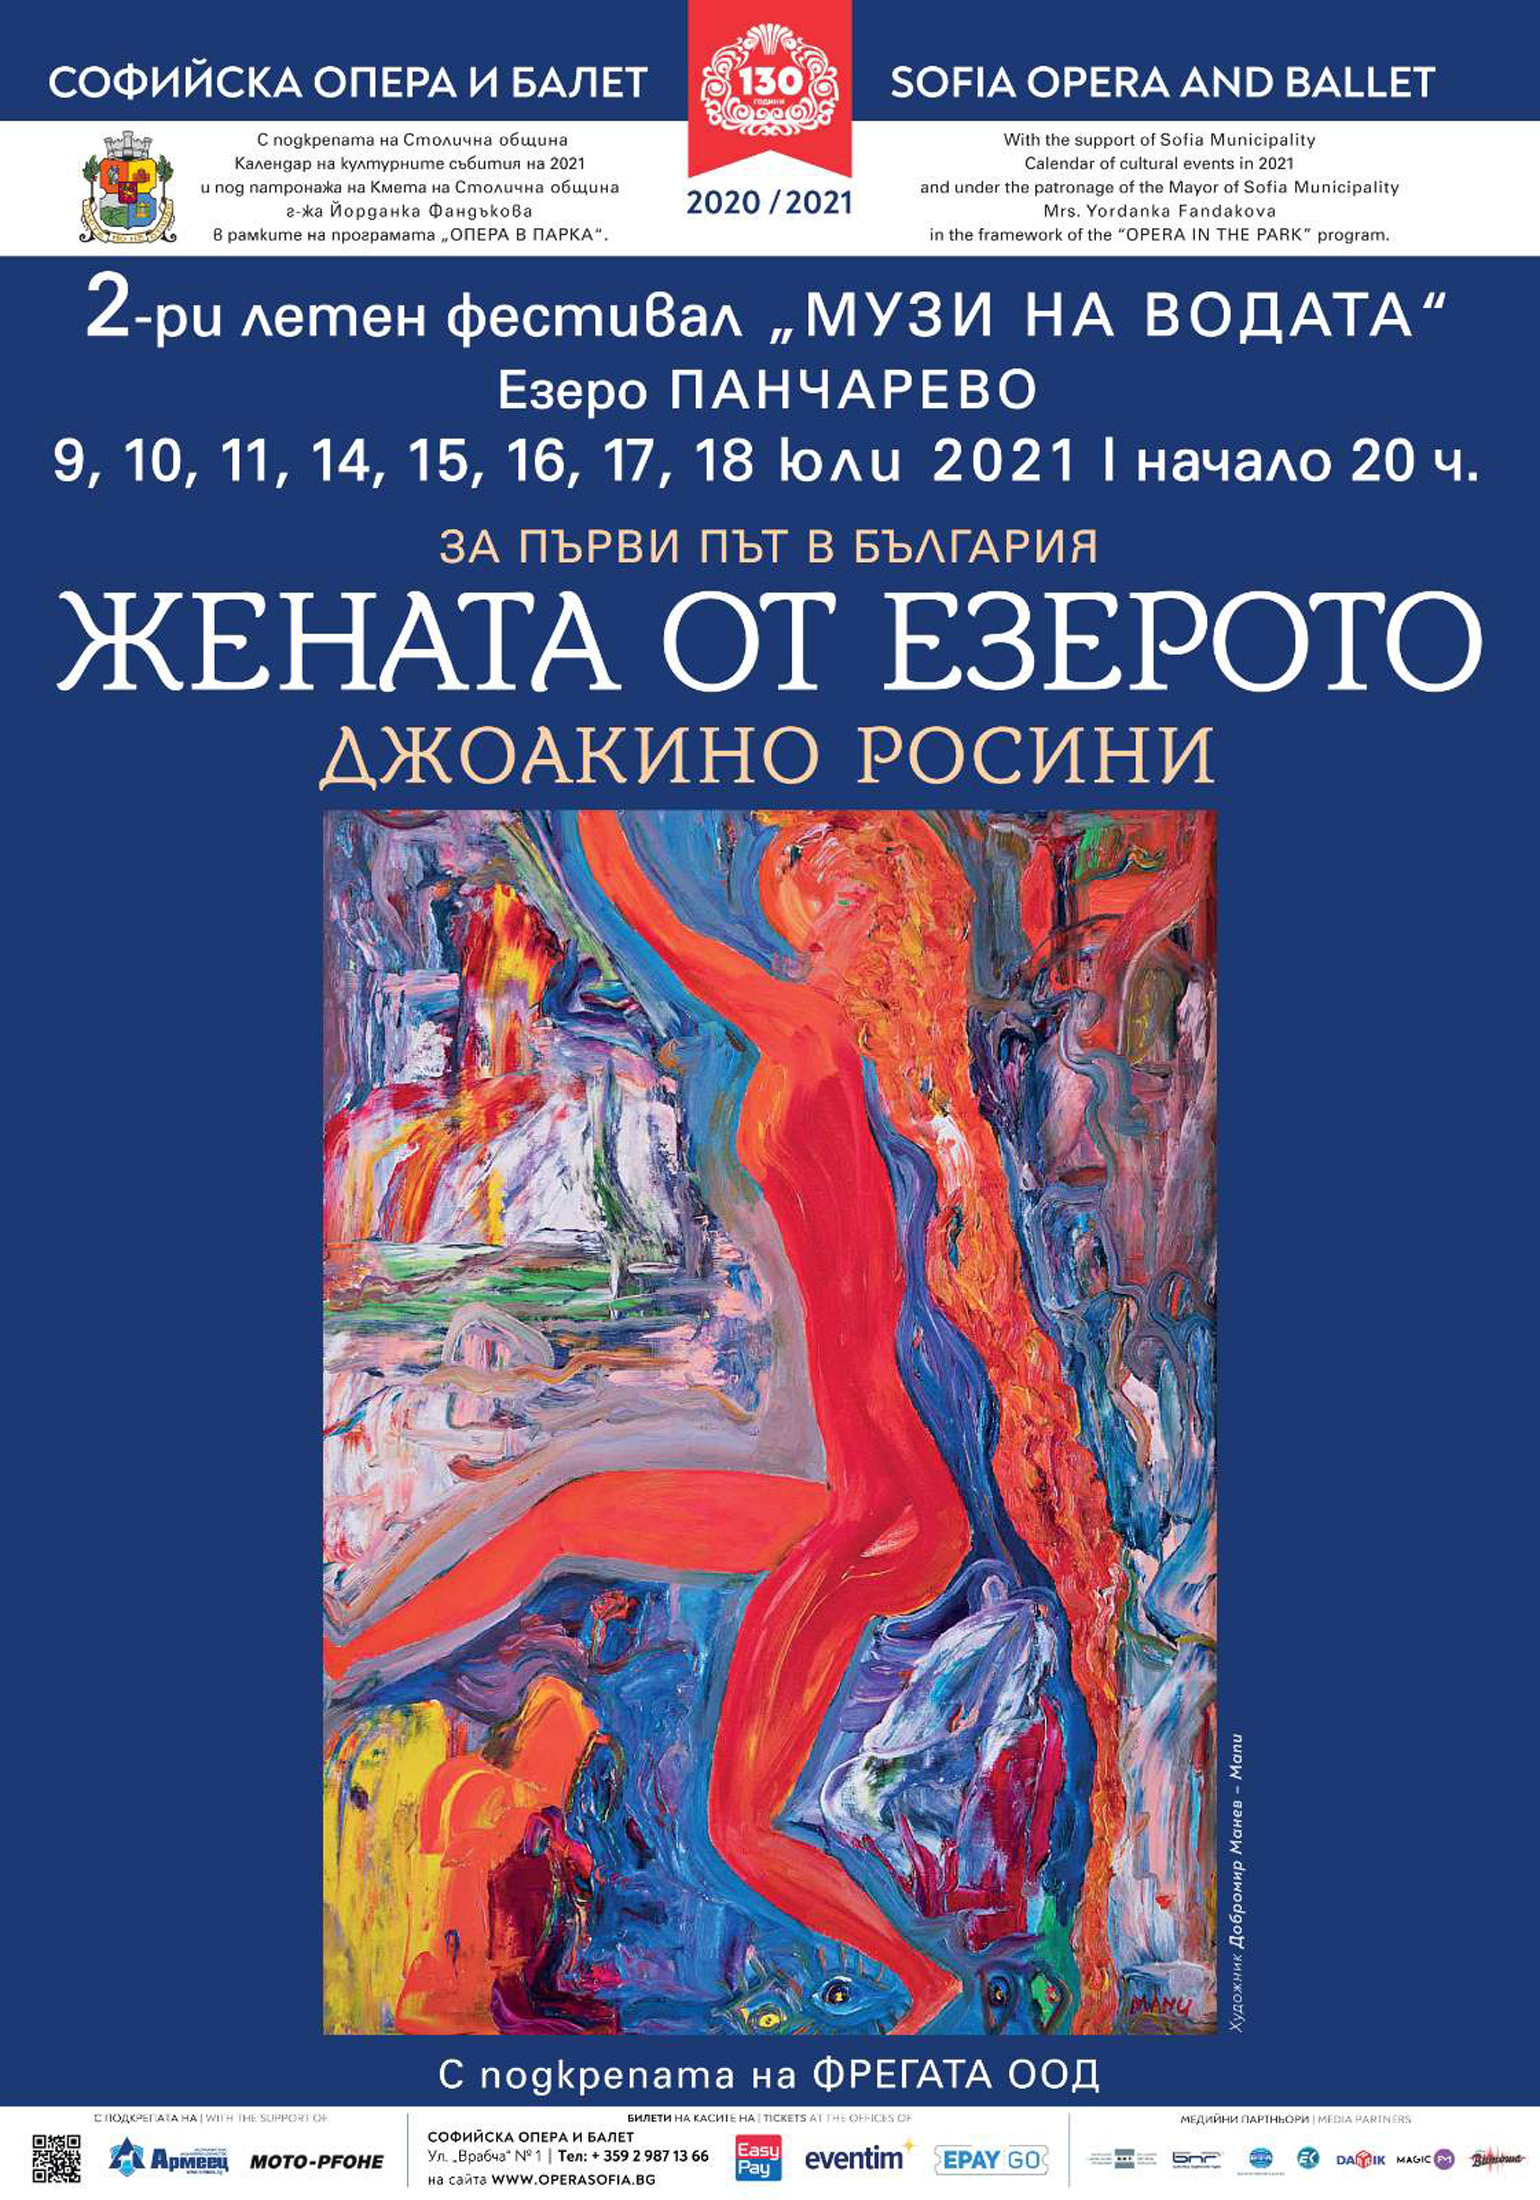 Софийска опера и балет открива втория летен фестивал "МУЗИ НА ВОДАТА" на езерото Панчарево